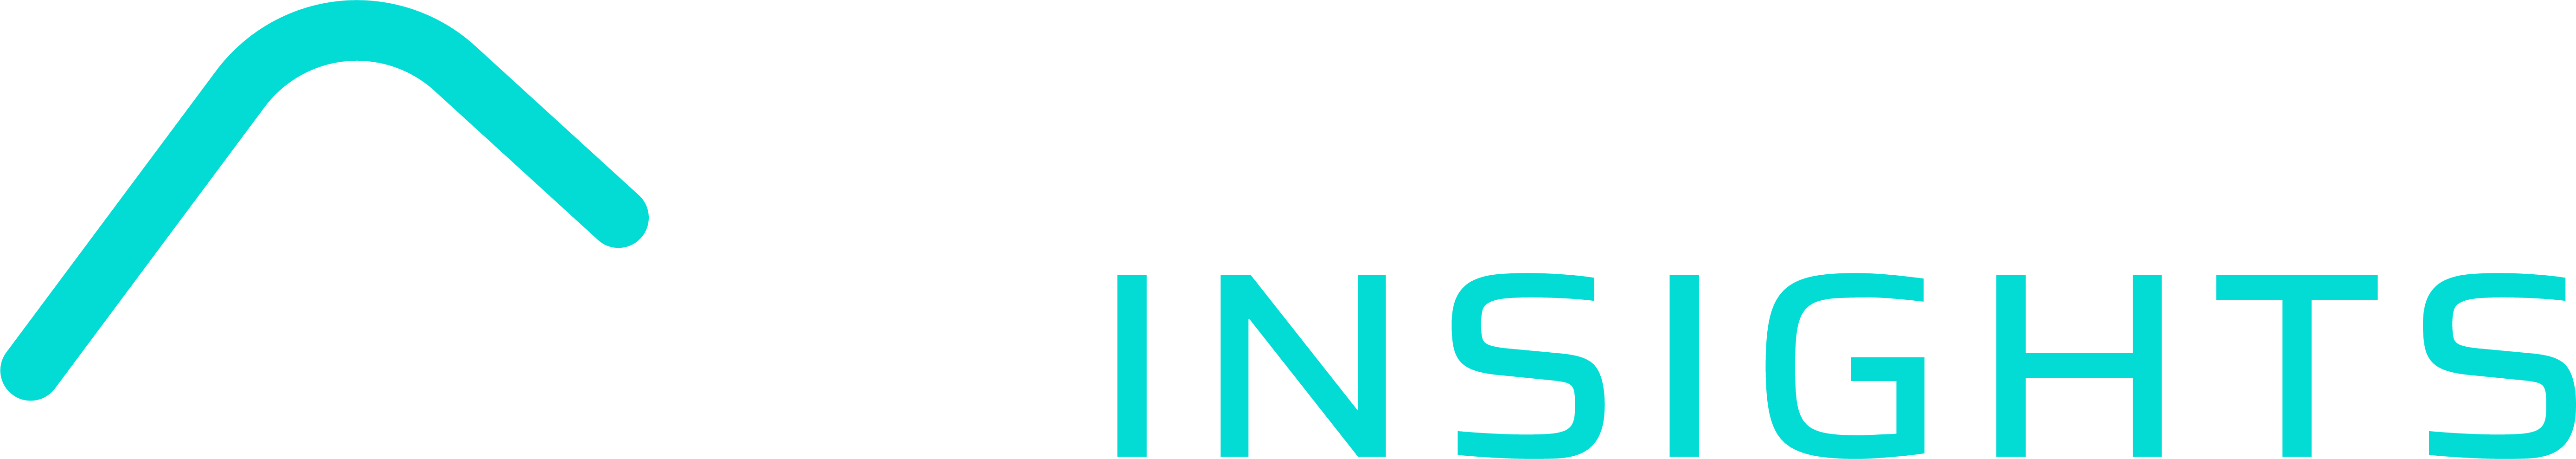 Novo Logo White Text